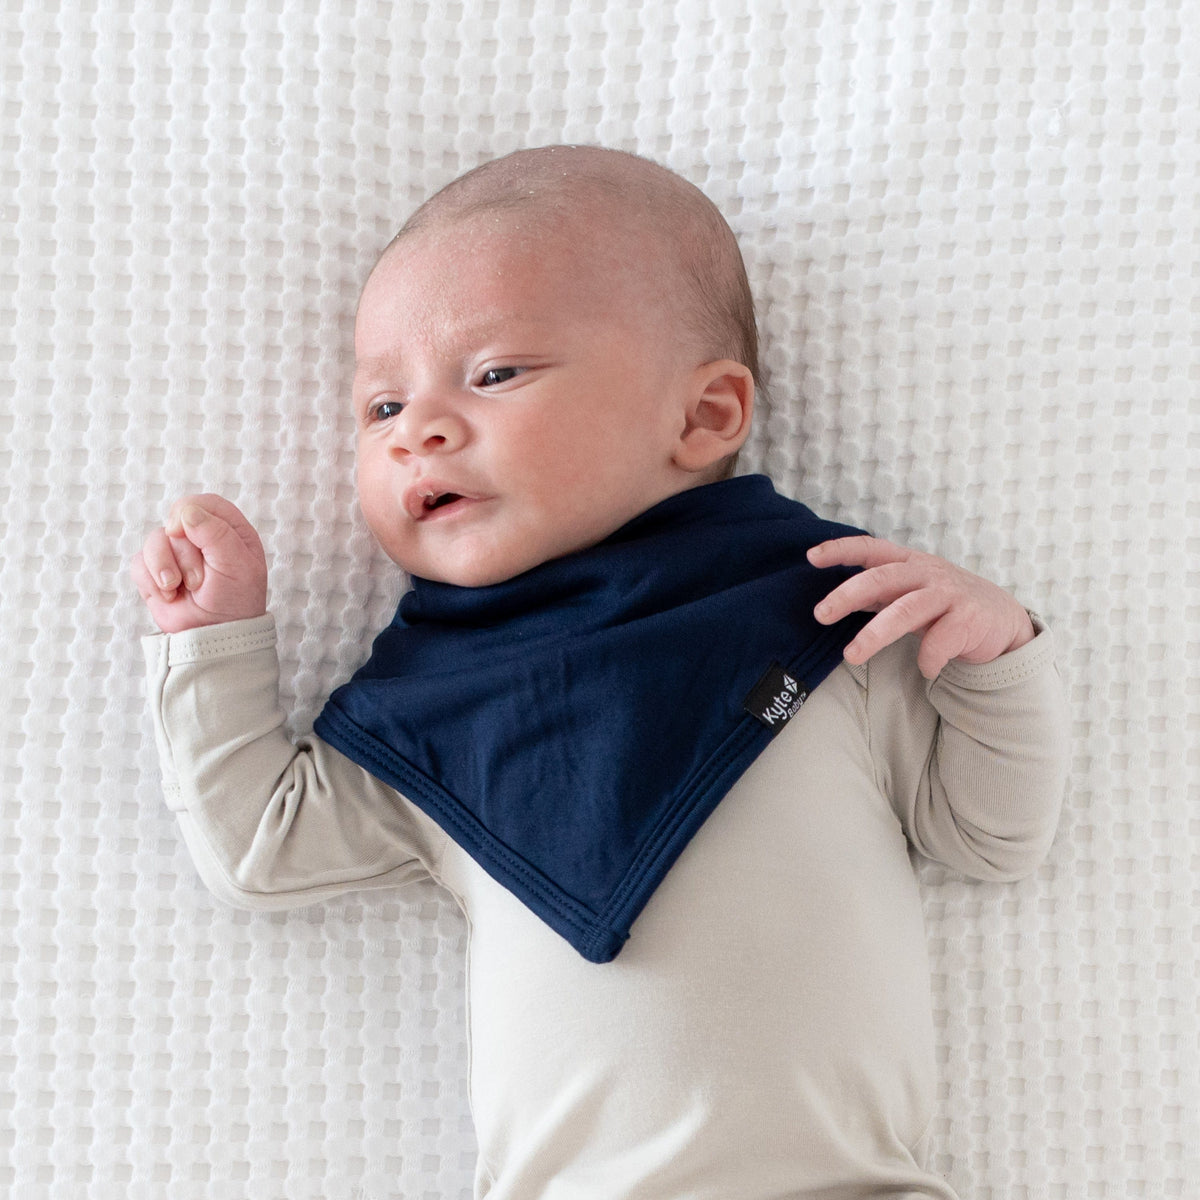 Infant wearing Kyte Baby Bib in Navy blue